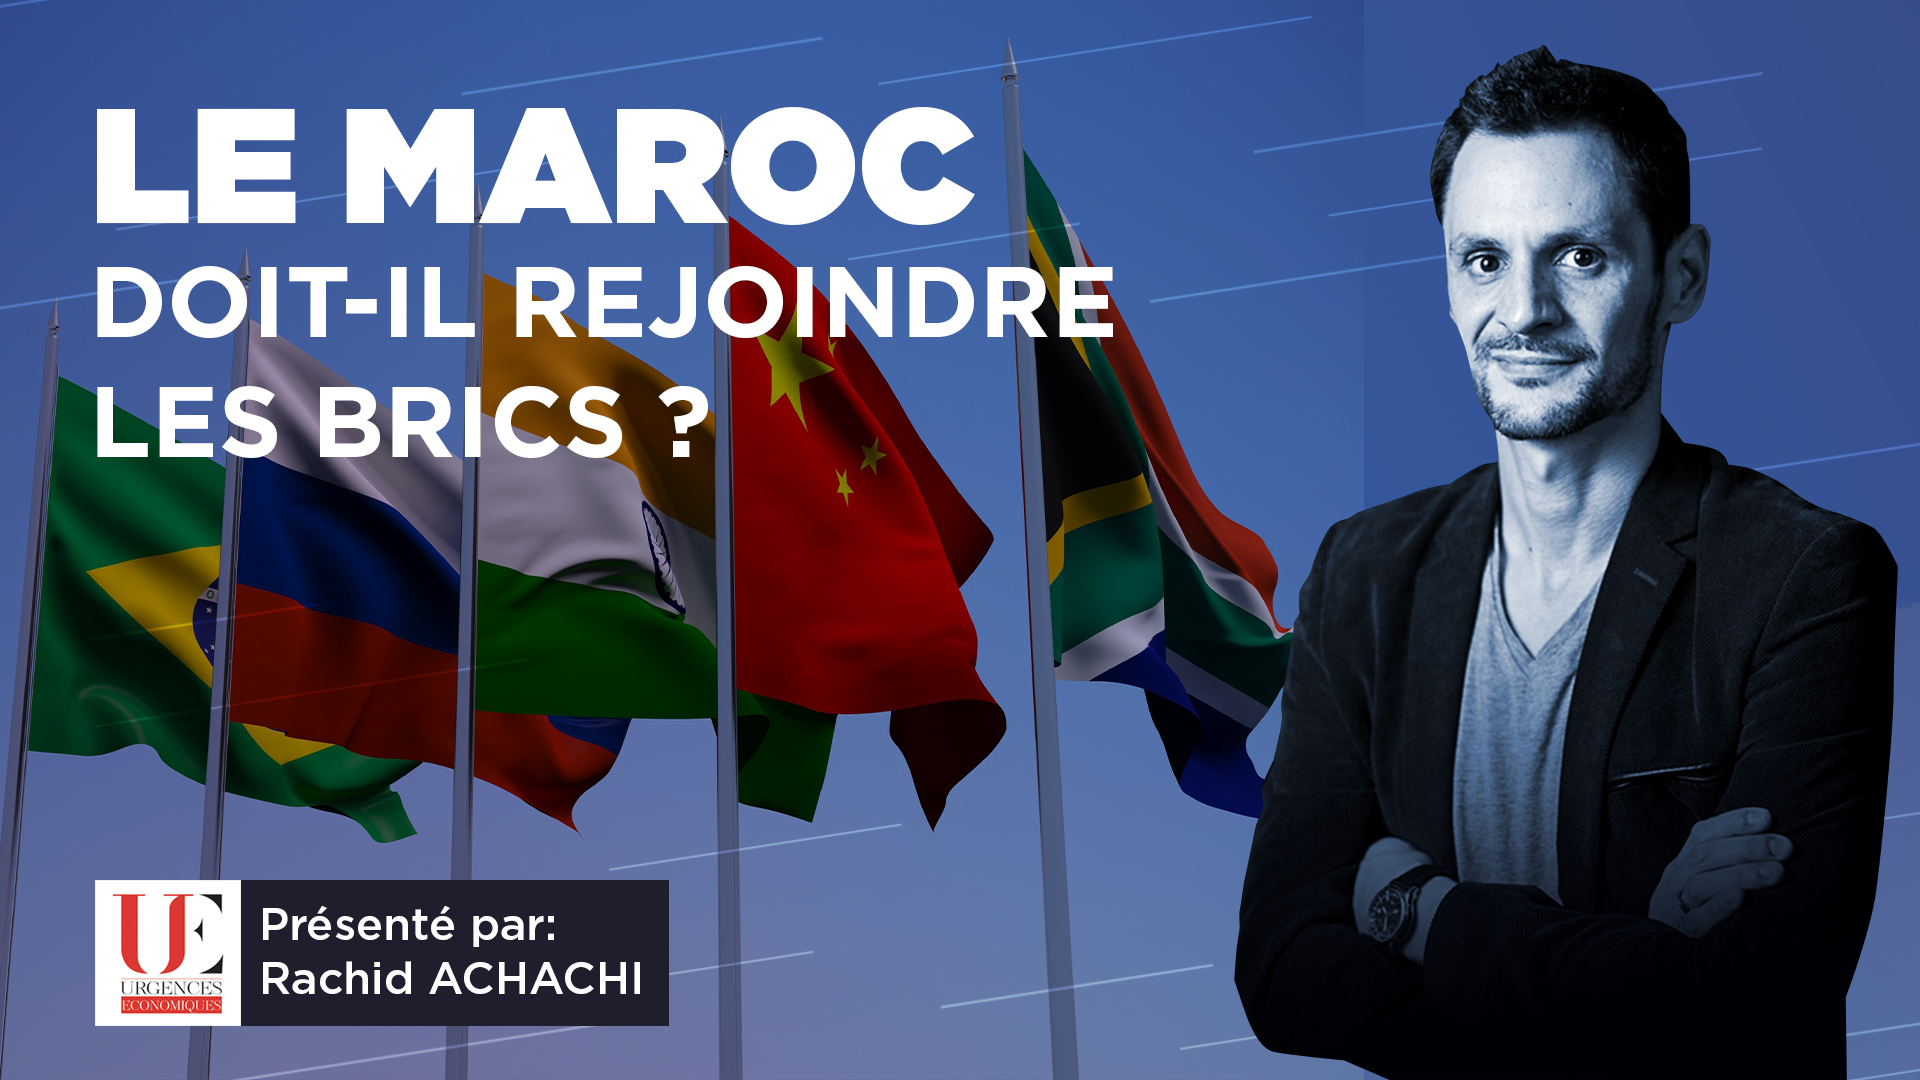 Le Maroc doit-il rejoindre les BRICS ?